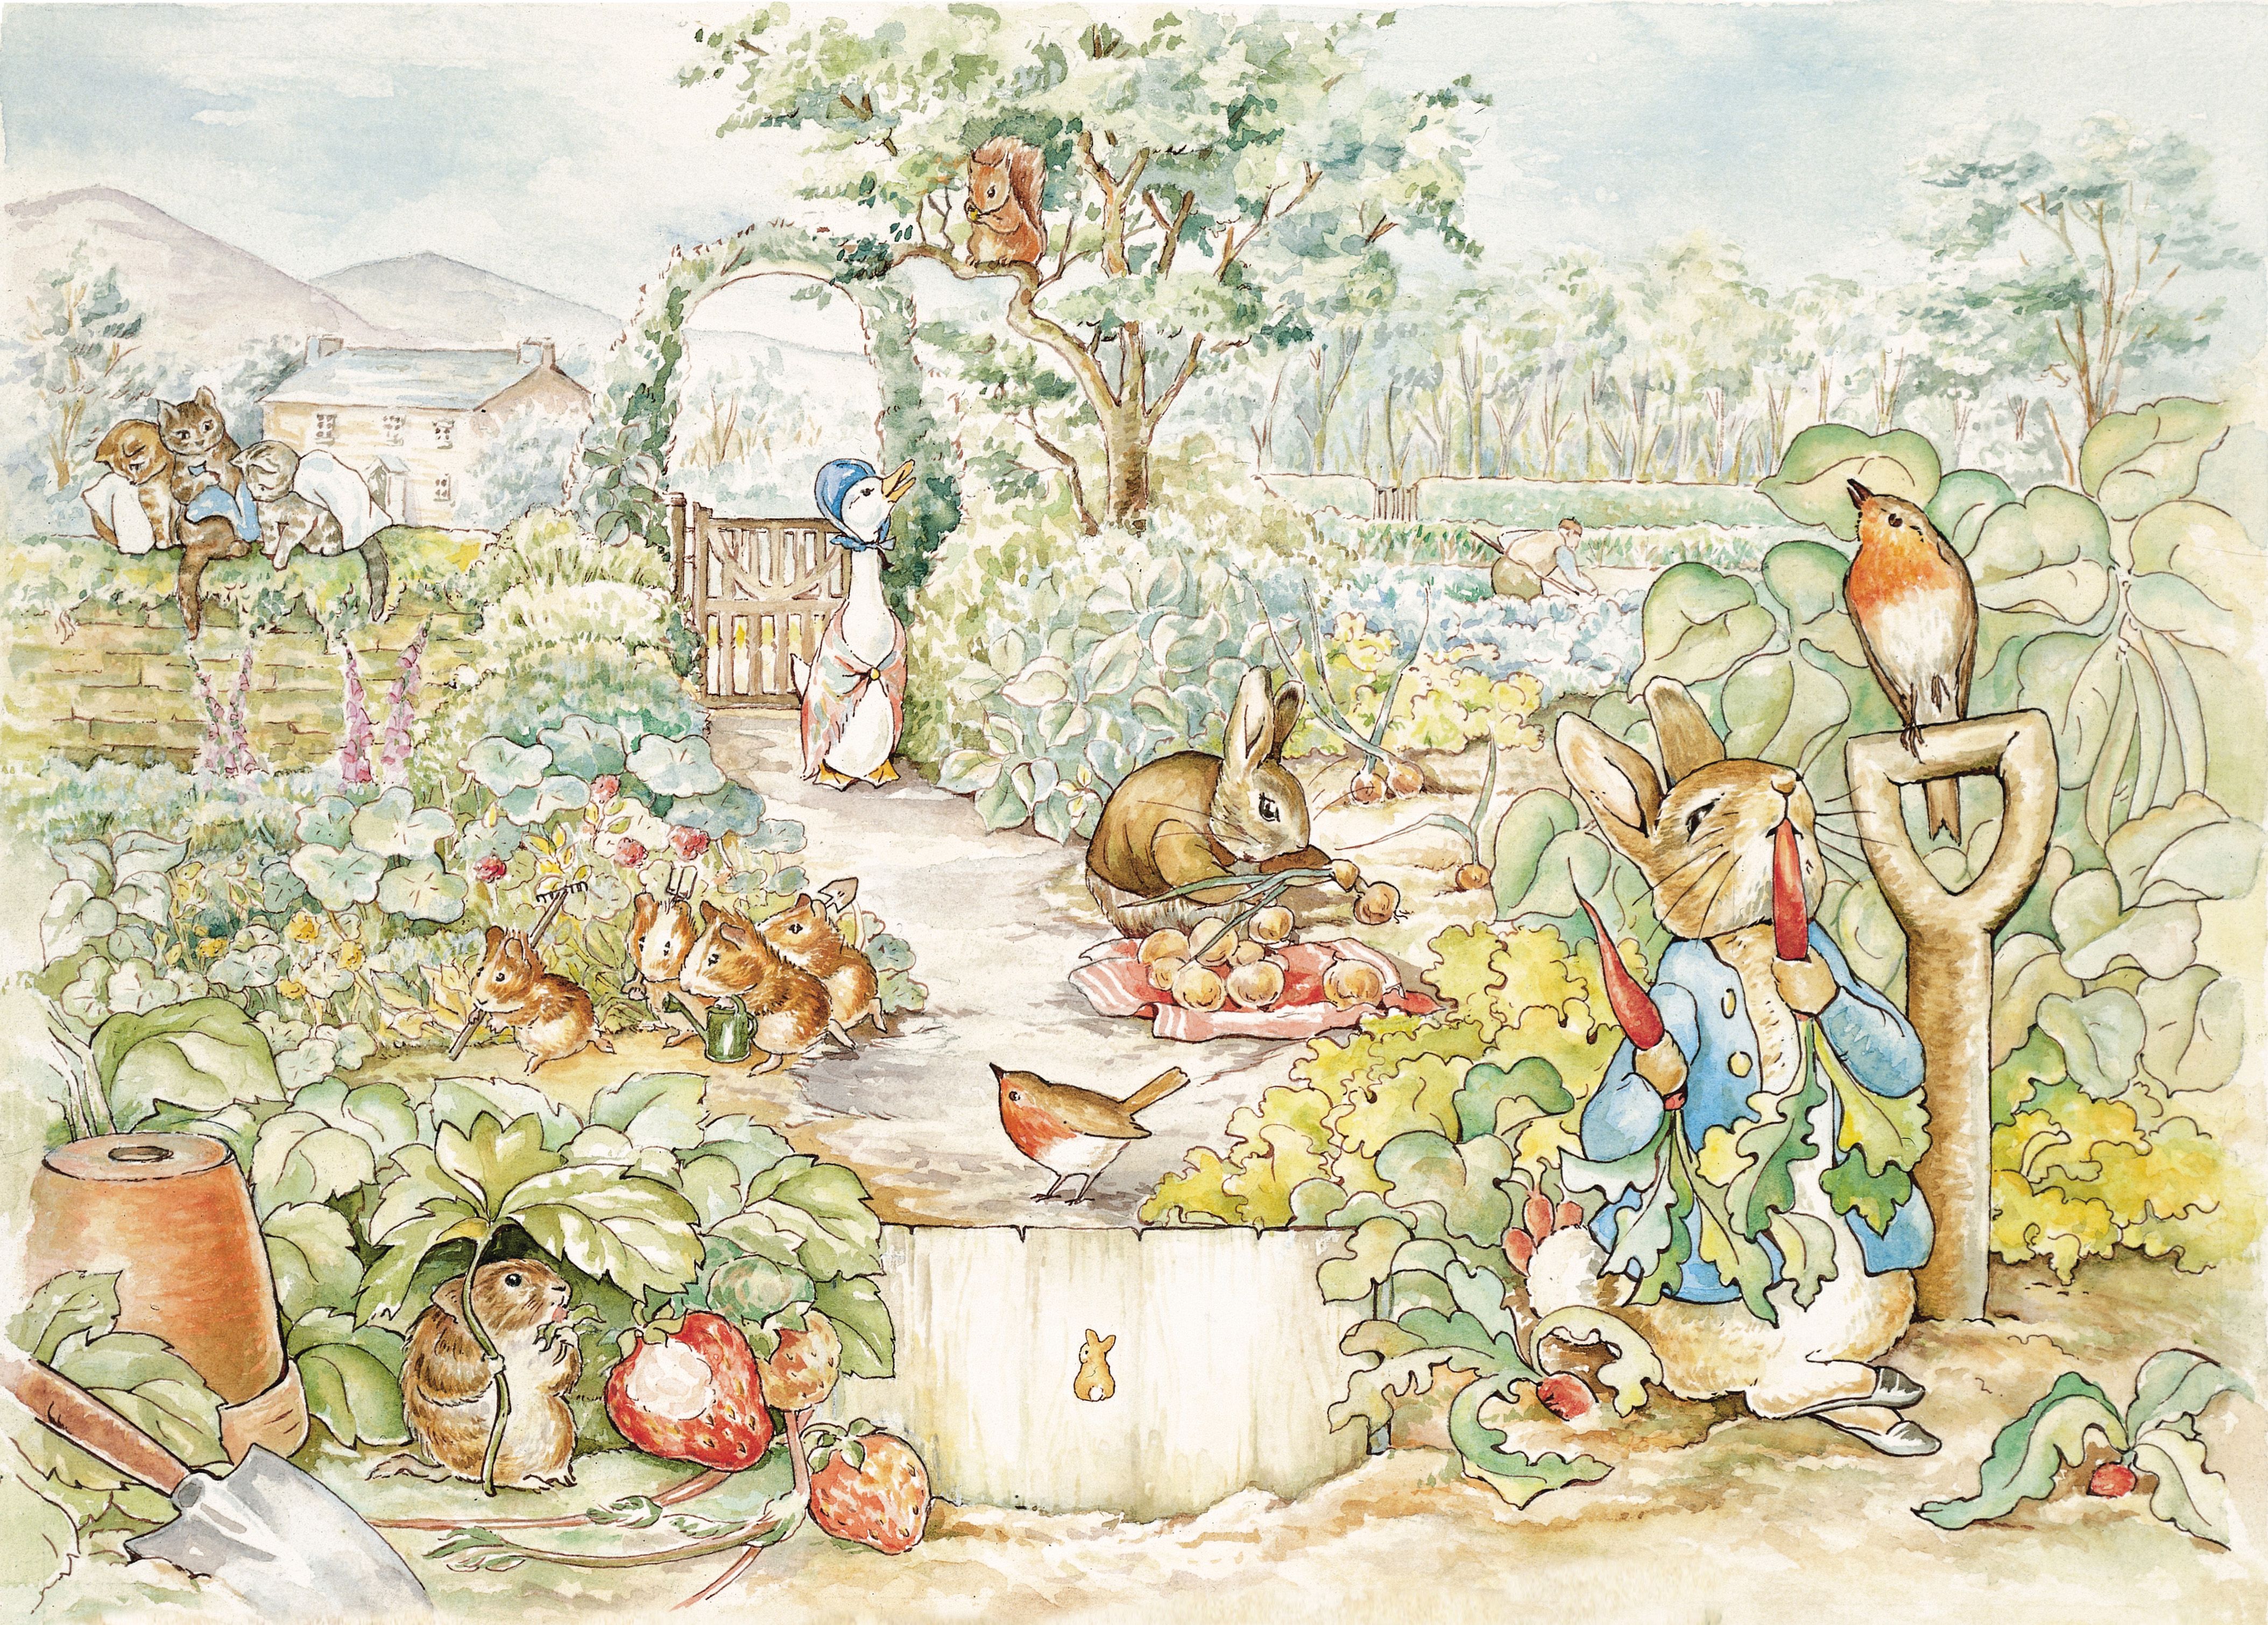 Peter Rabbit Book Garden , HD Wallpaper & Backgrounds